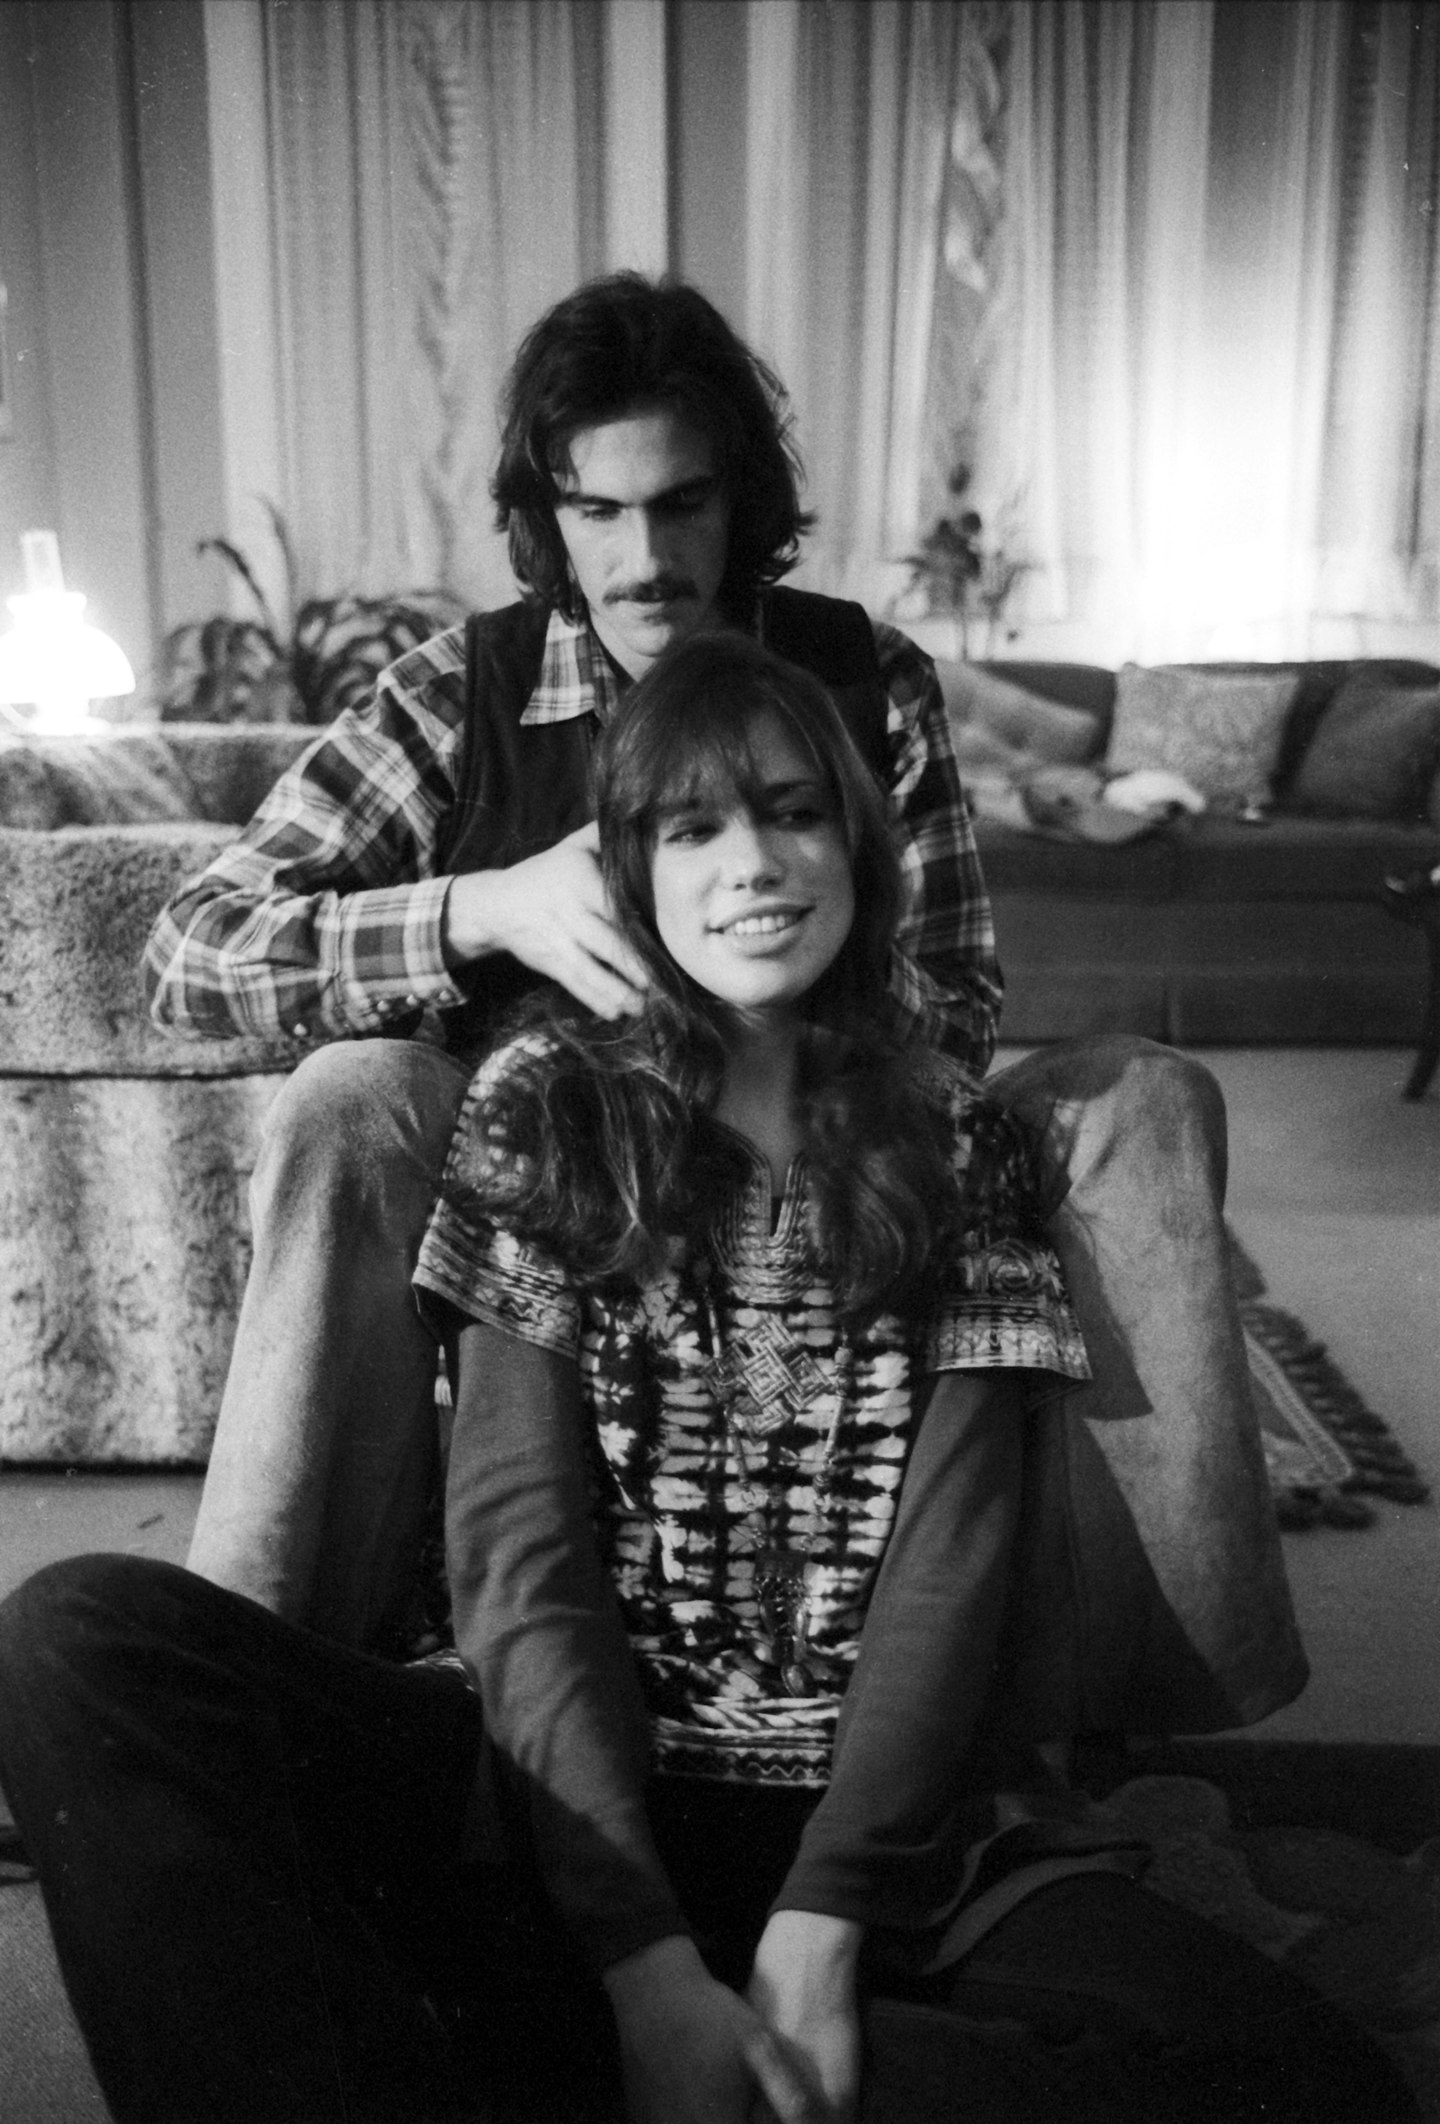 1972 – Carly Simon and James Taylor